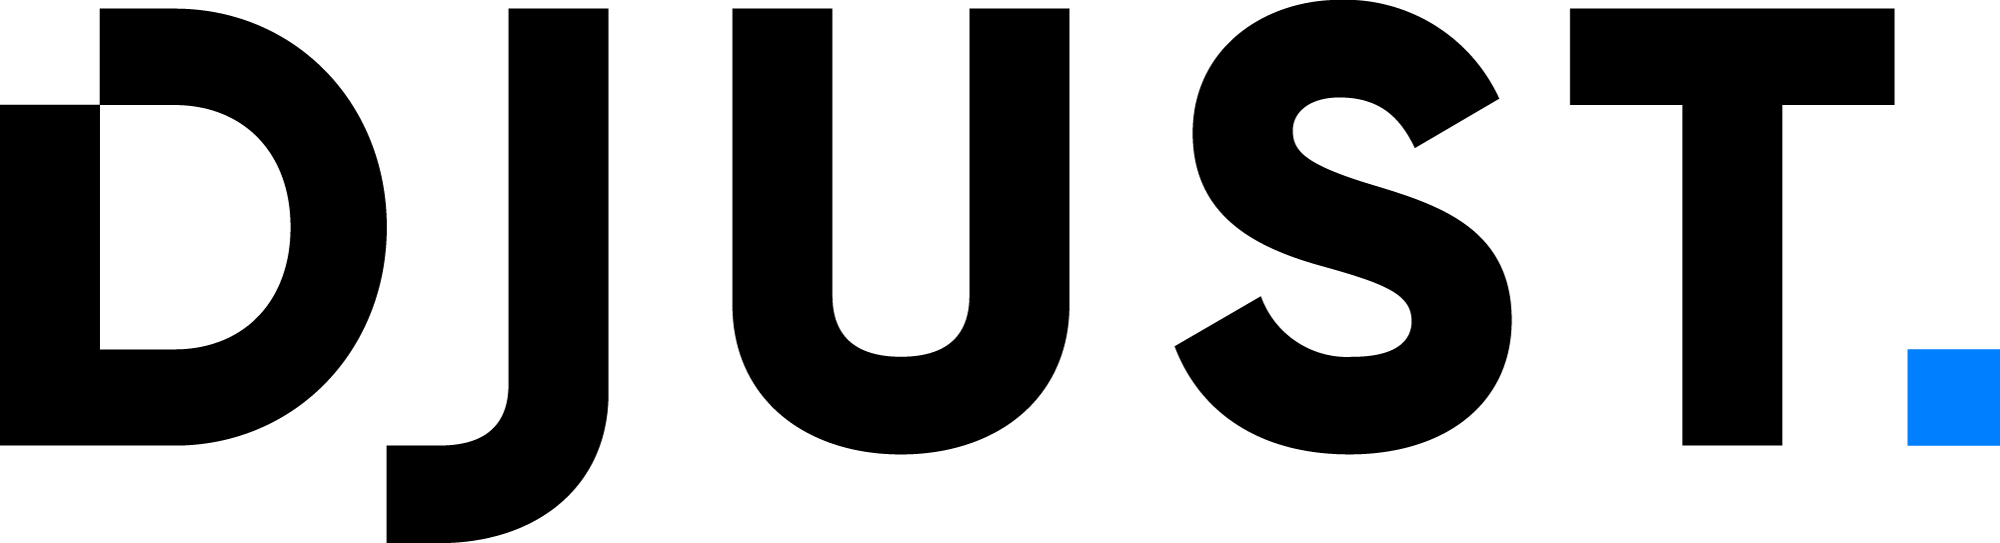 DJUST logo noir bleu 182